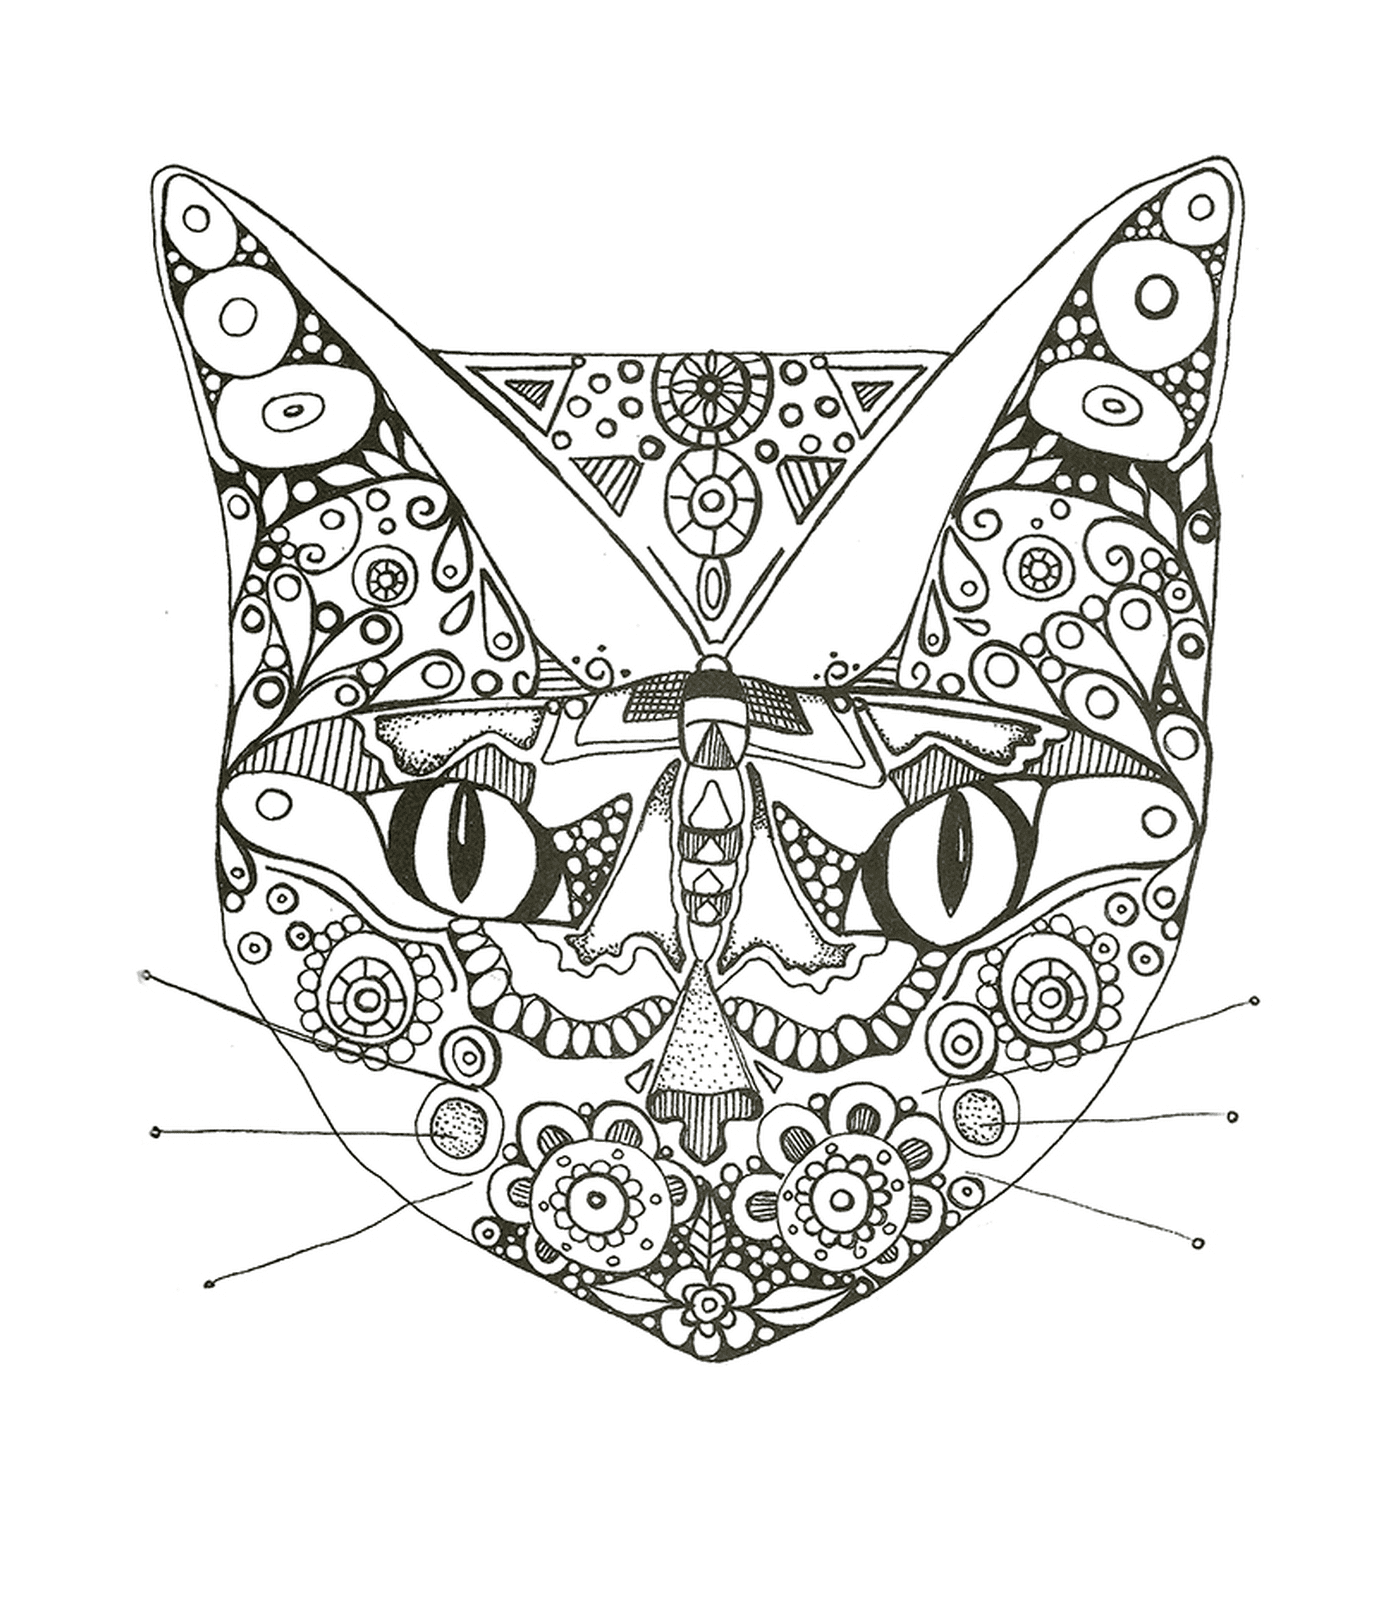  Katze Gesicht in Zeichnung 